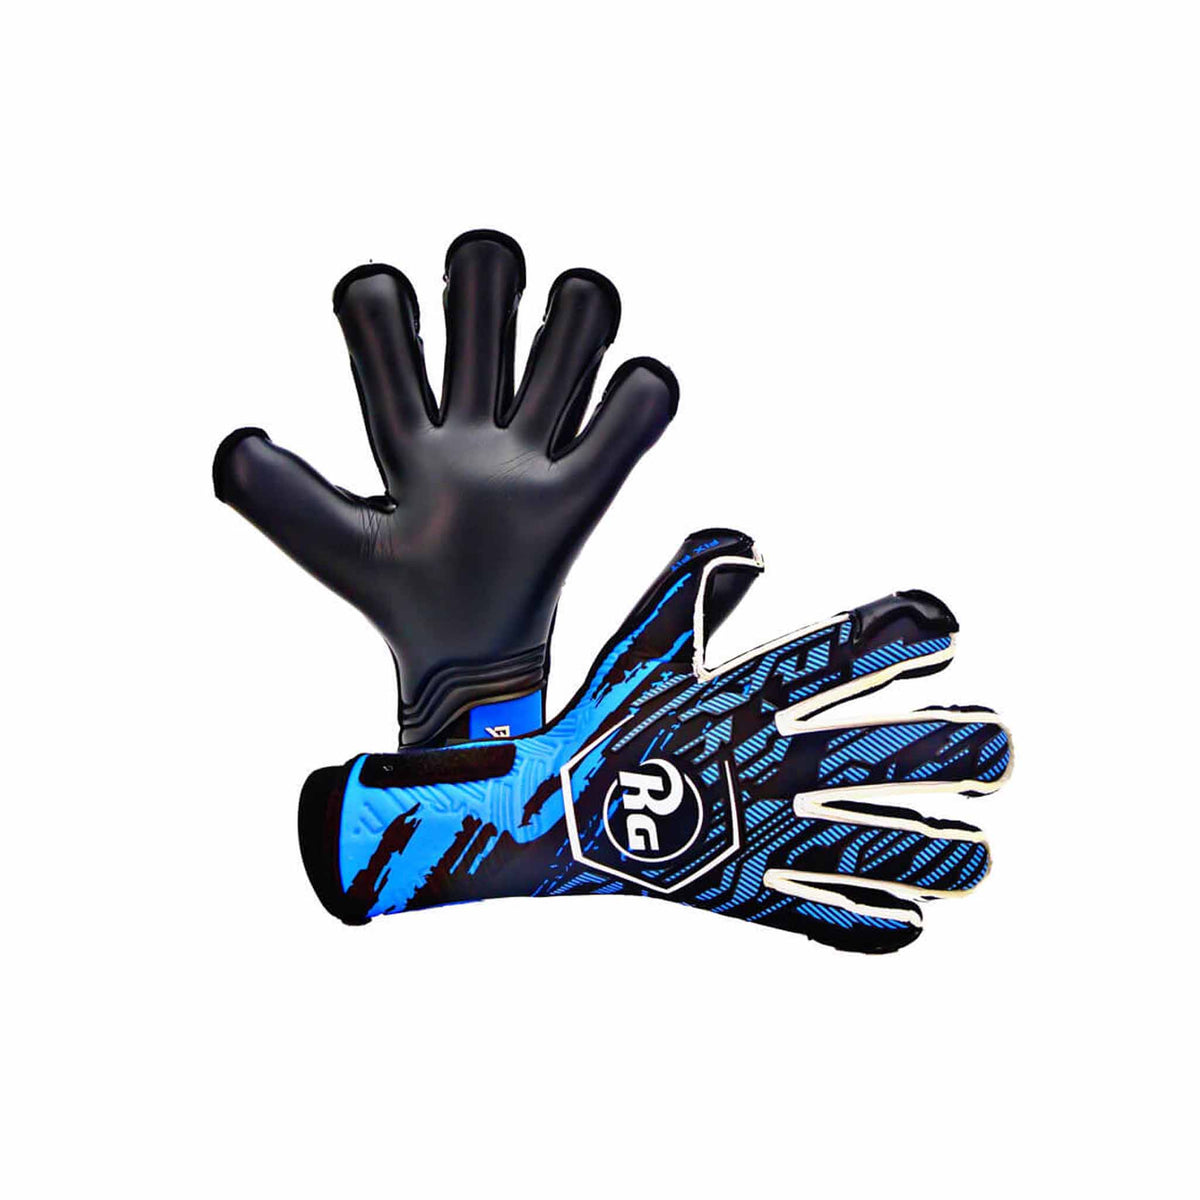 RG Goalkeeper Gloves Bacan 2022-2023 gants de gardien de but de soccer - Bleu / Noir